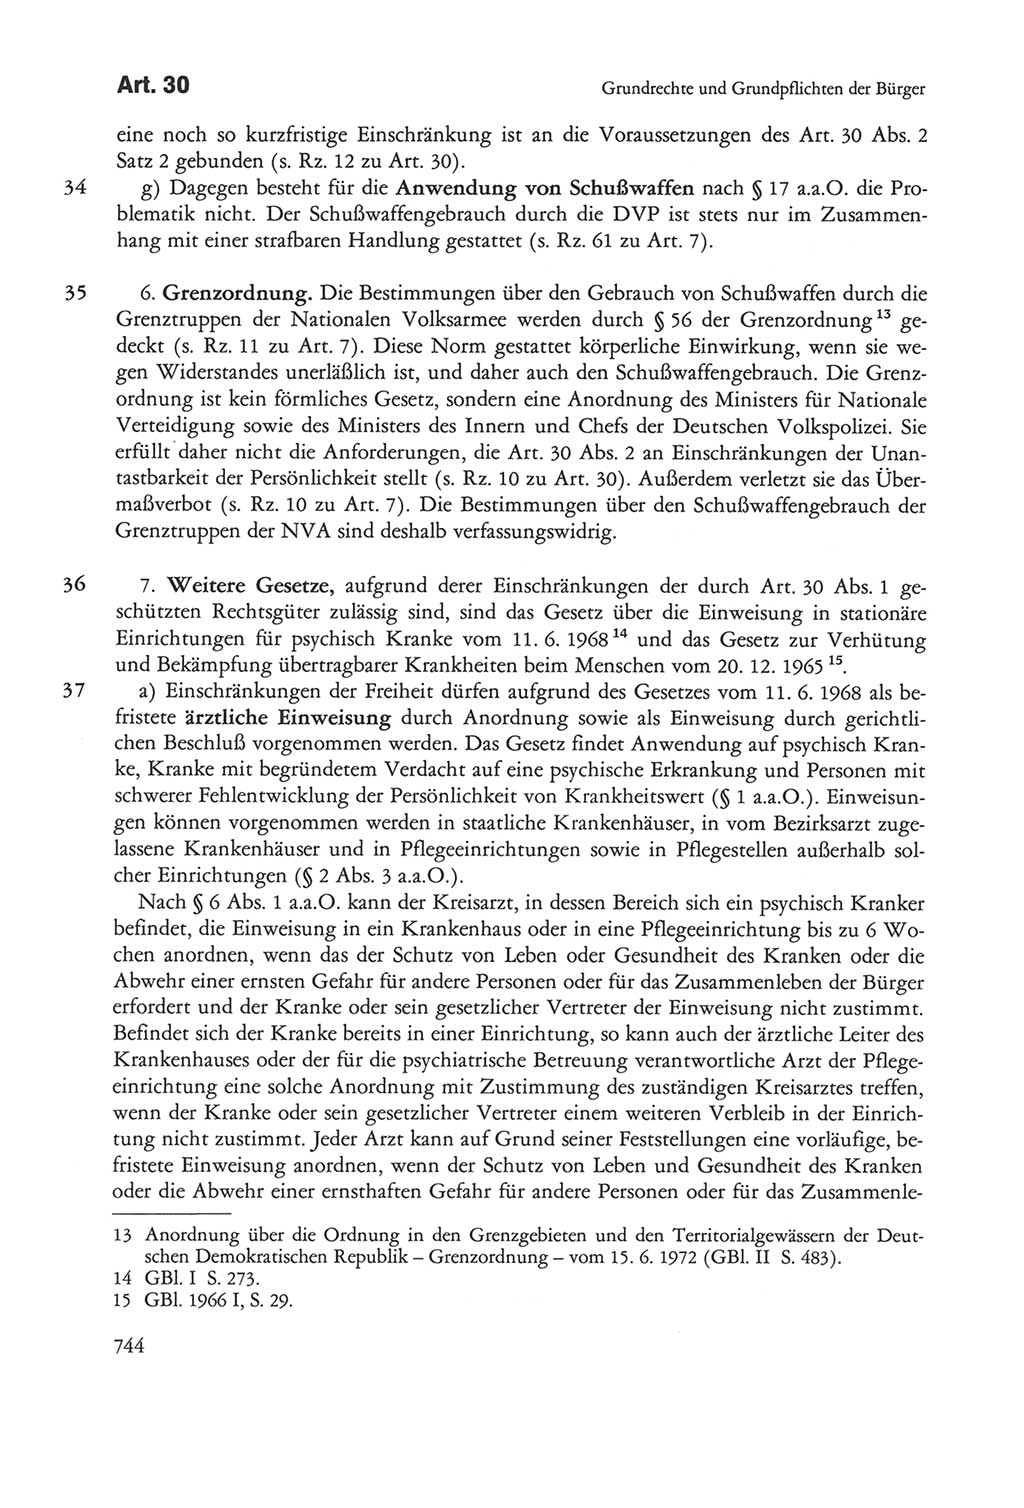 Die sozialistische Verfassung der Deutschen Demokratischen Republik (DDR), Kommentar 1982, Seite 744 (Soz. Verf. DDR Komm. 1982, S. 744)